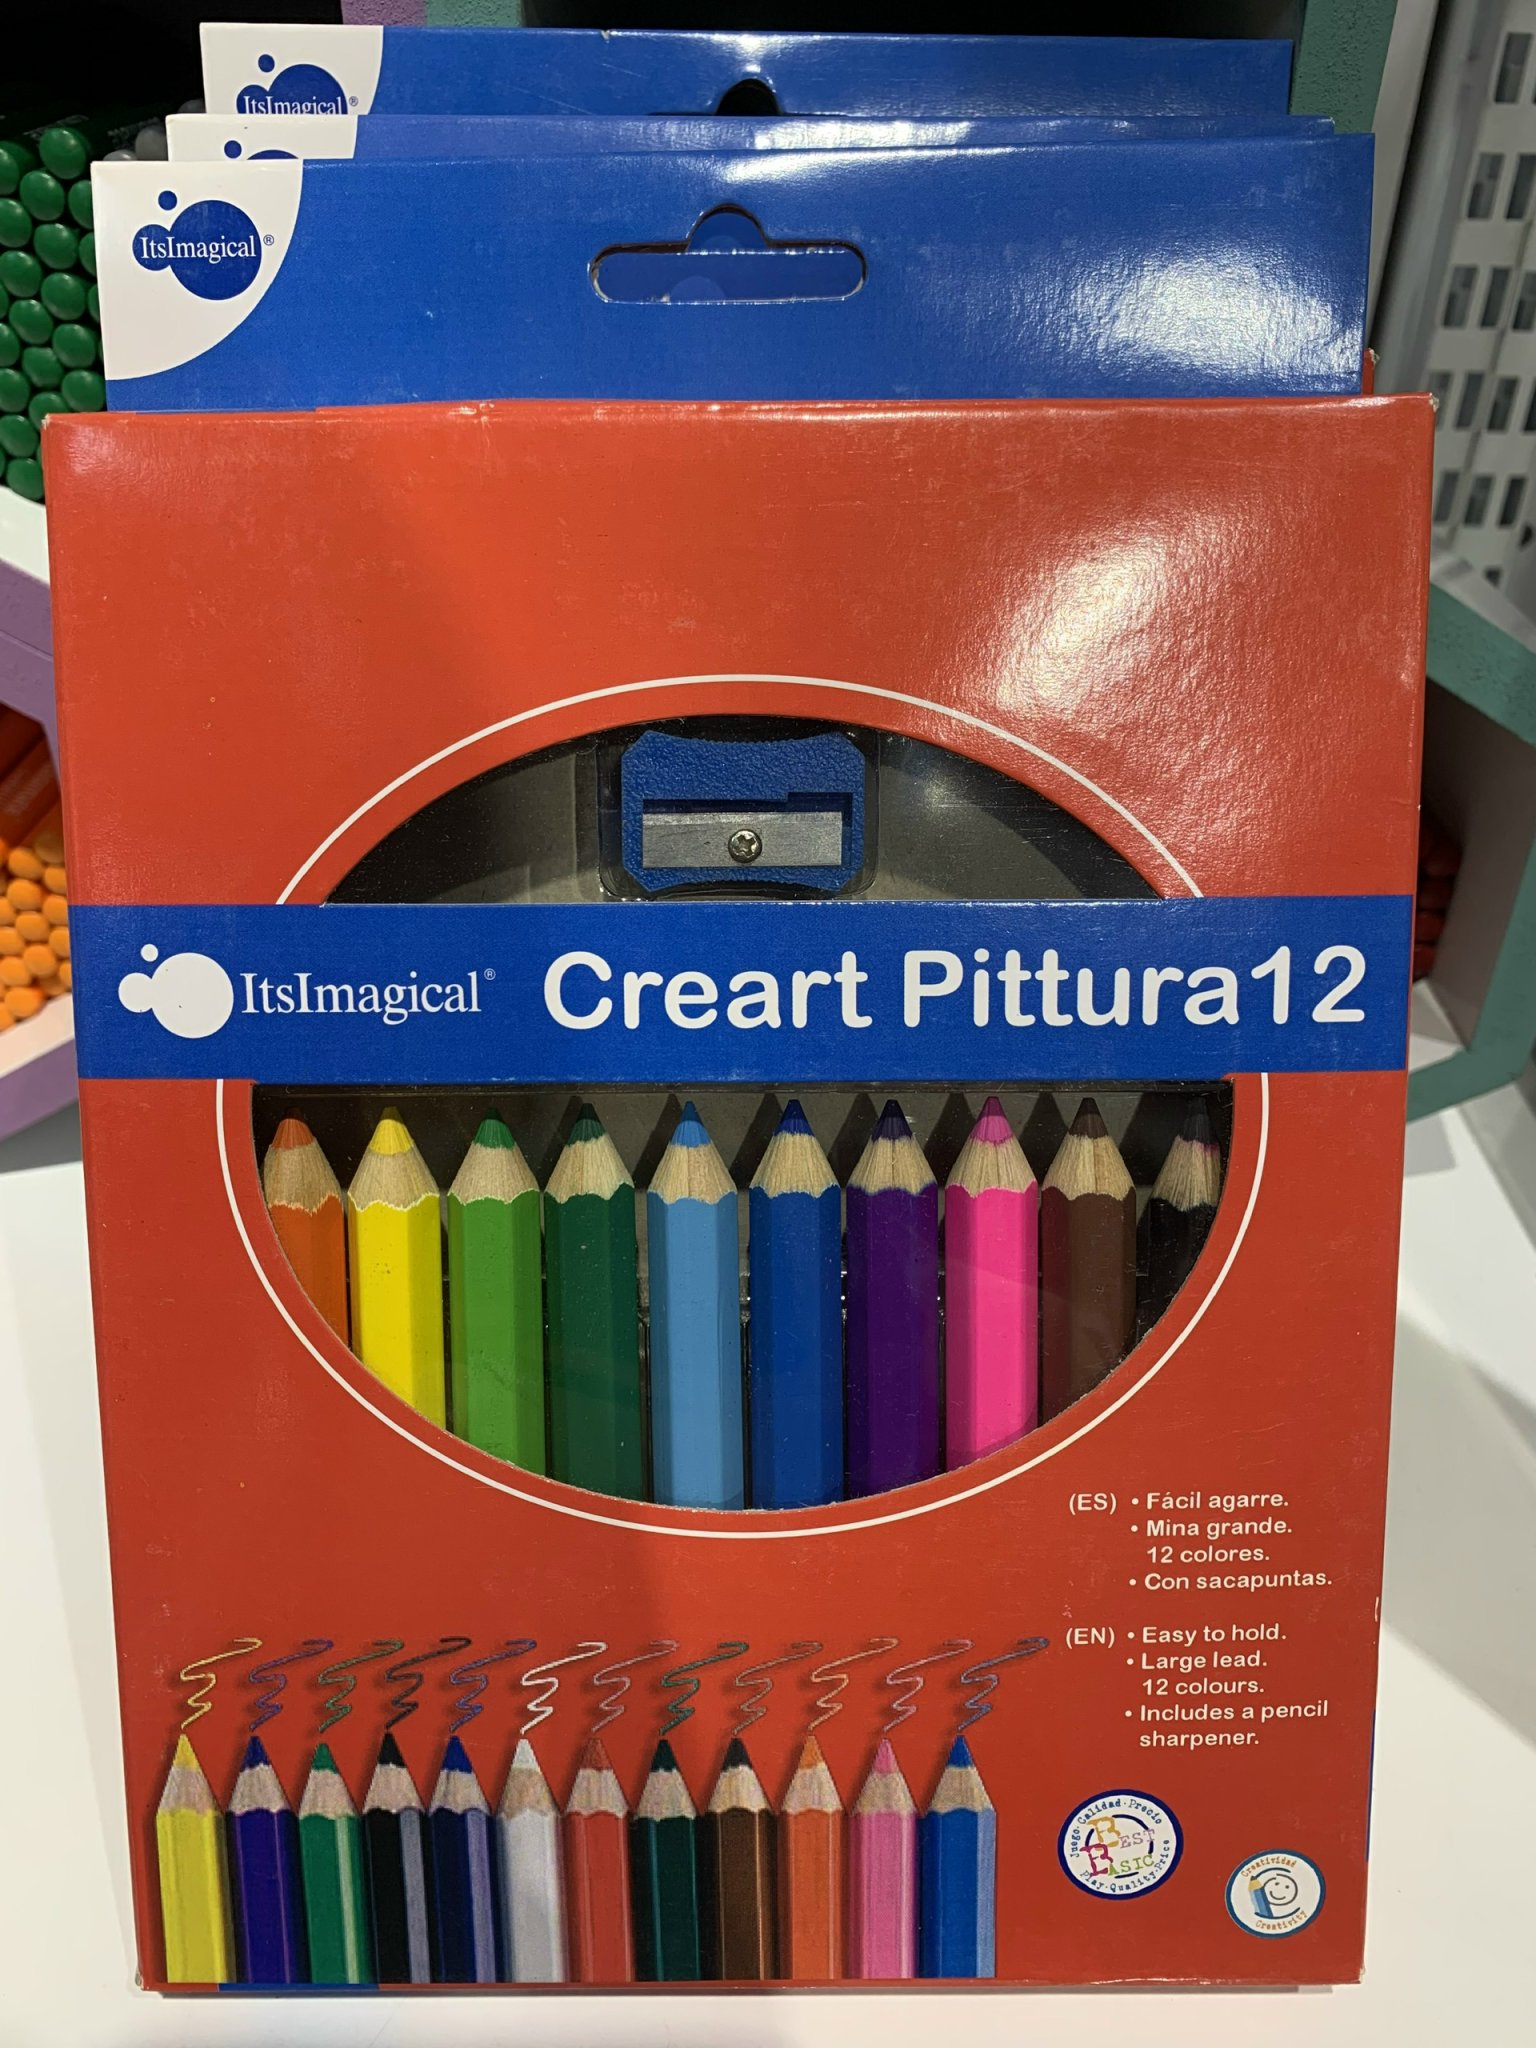 Hộp Chì Màu Creart Pittura, bút chì màu cho bé - HCMCP12